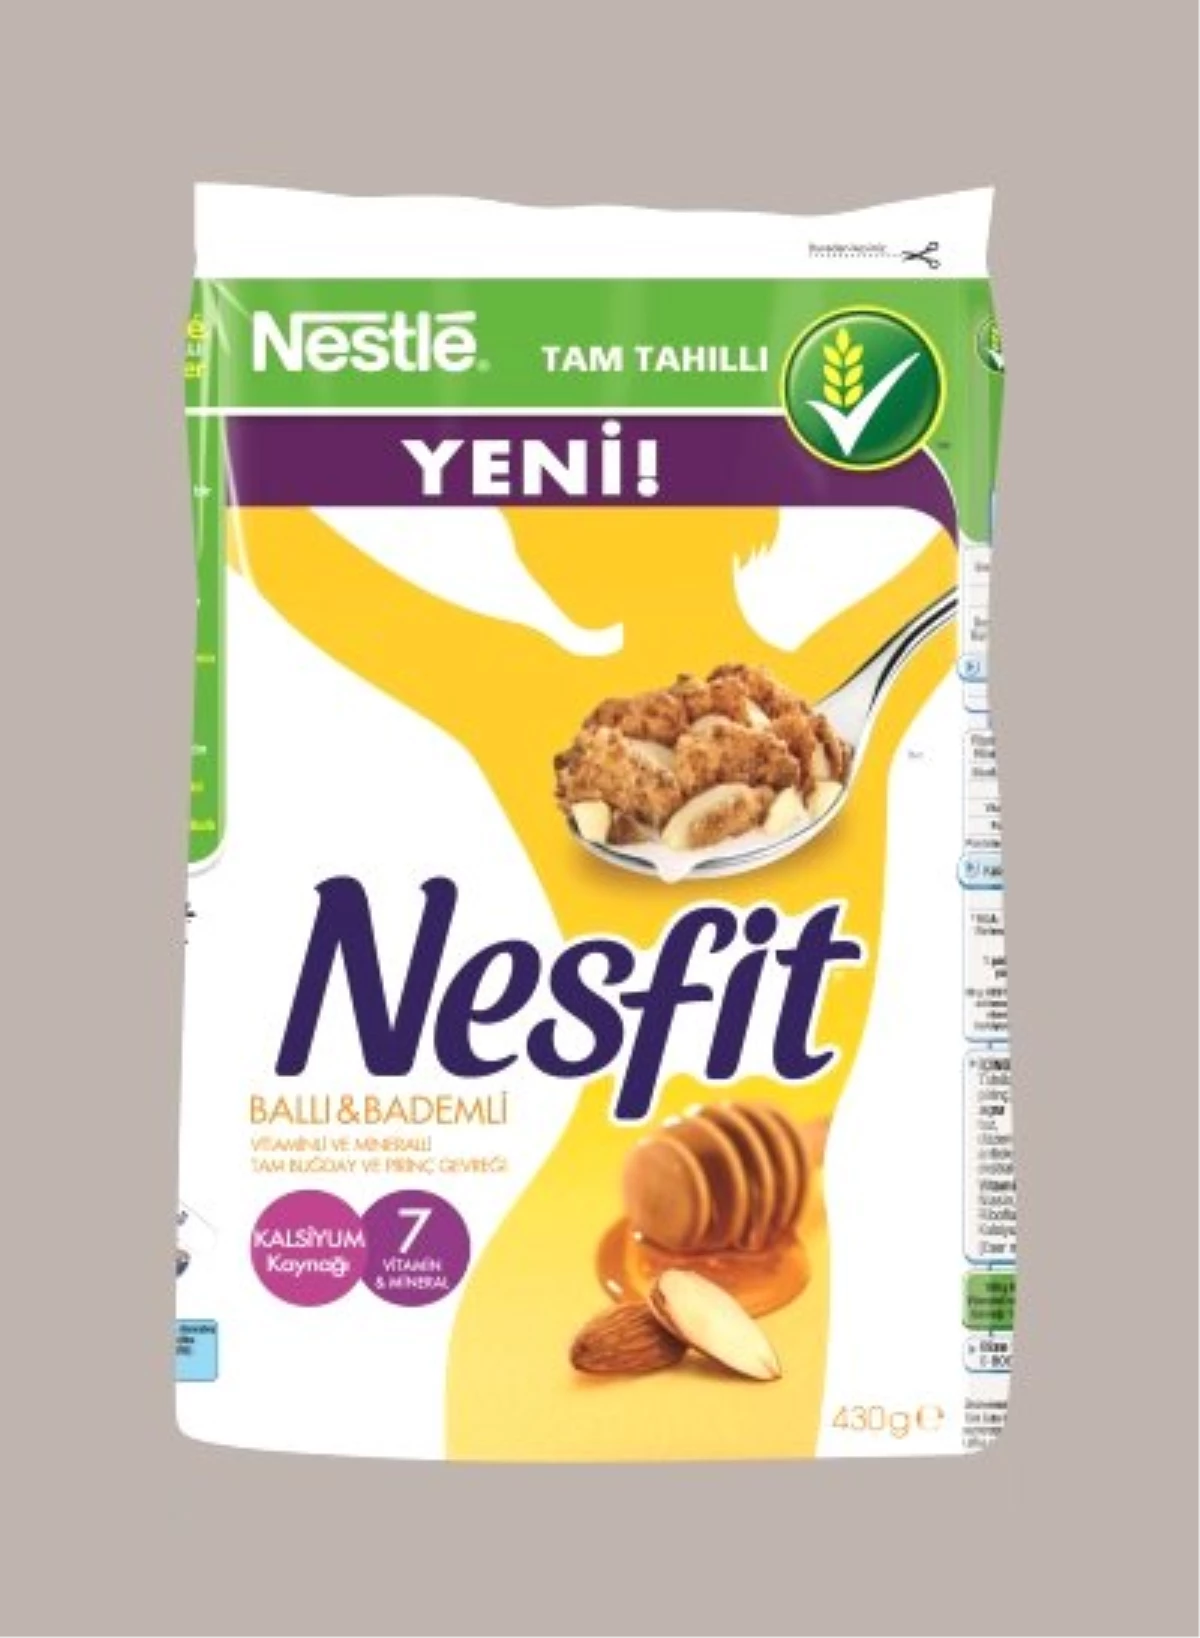 Nestlé Nesfit Ballı Bademli "Yılın En İyi Yeni Ürünü" Ödülünü Kazandı